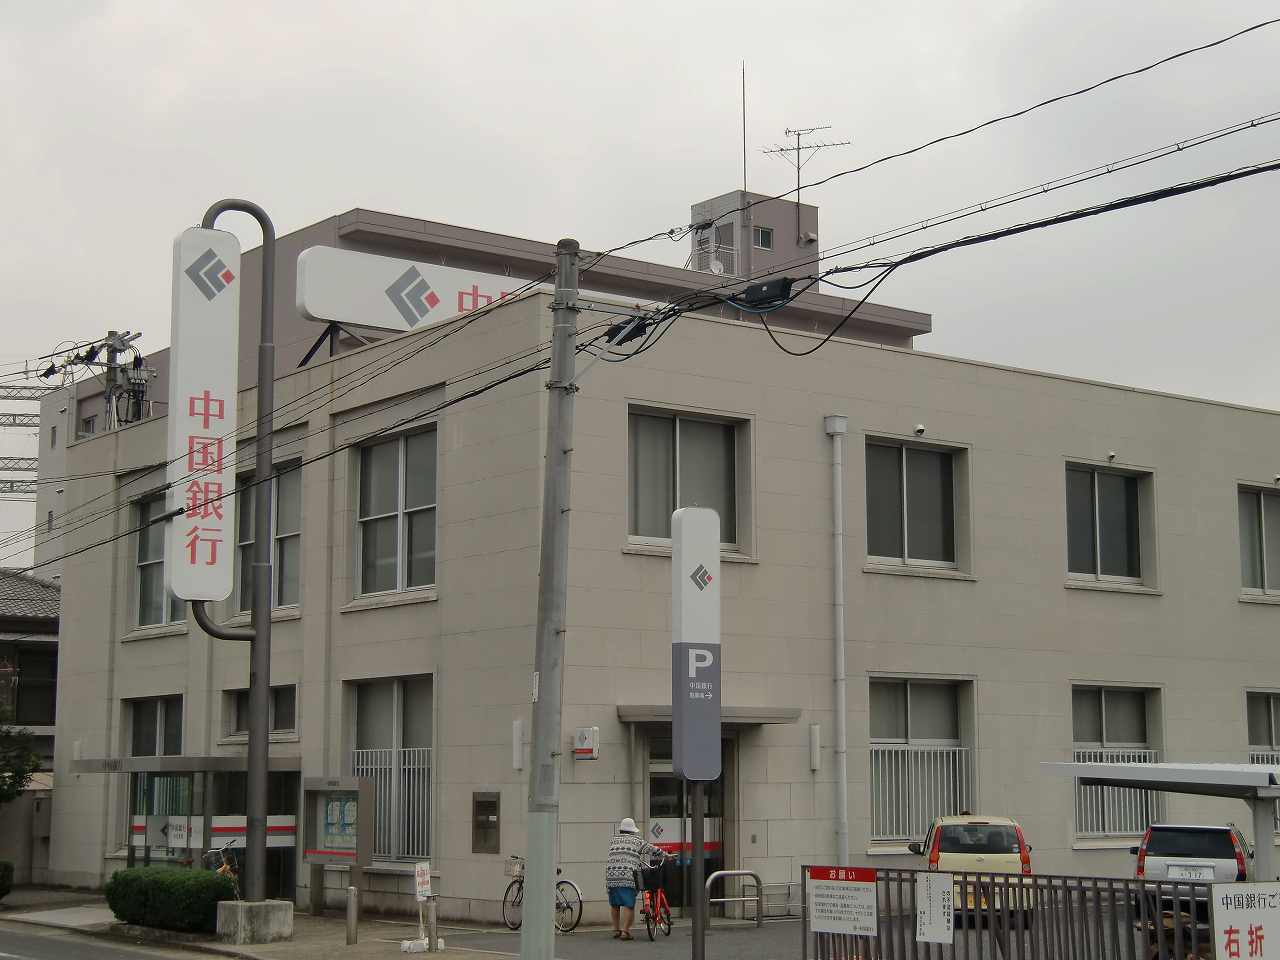 Bank. 355m to Bank of China Okayama city hall branch office (Bank)